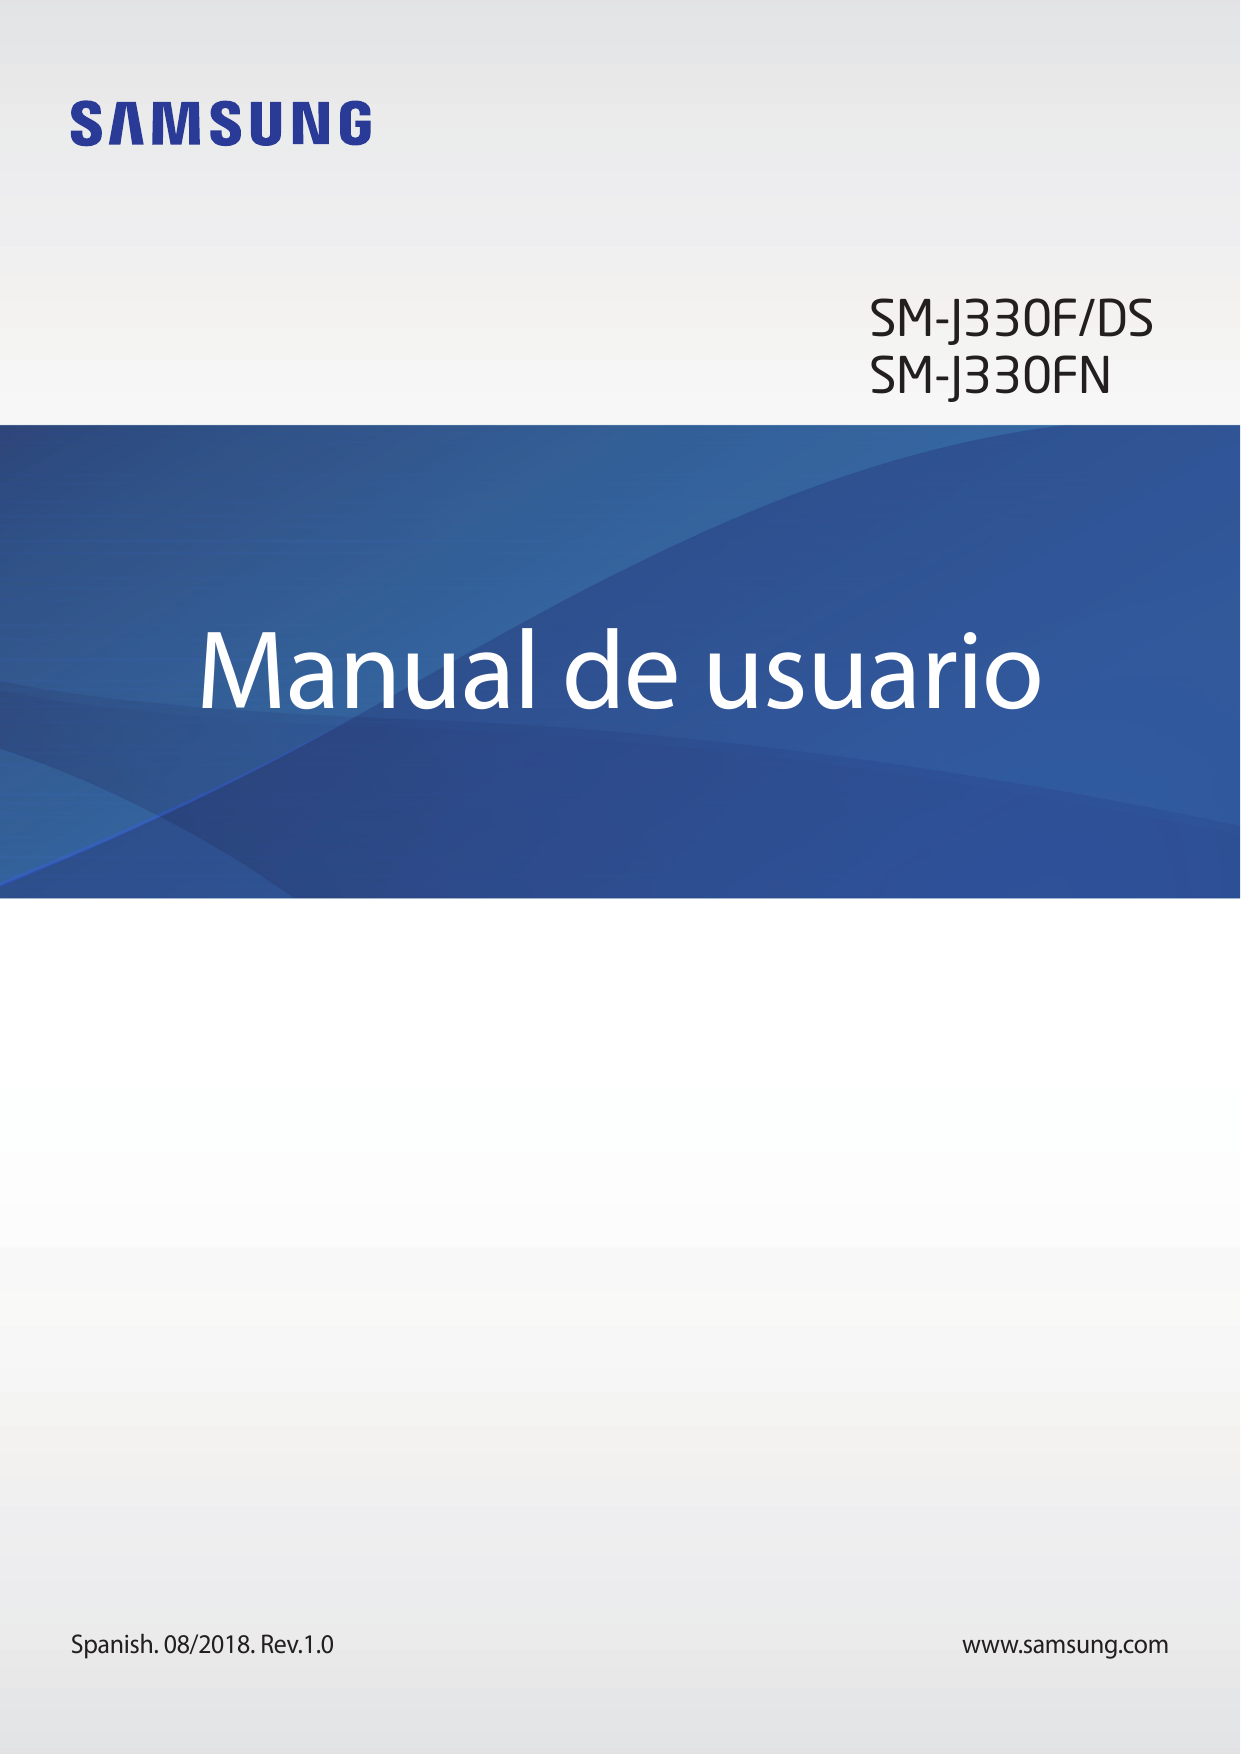 SM-J330F/DSSM-J330FNManual de usuarioSpanish. 08/2018. Rev.1.0www.samsung.com